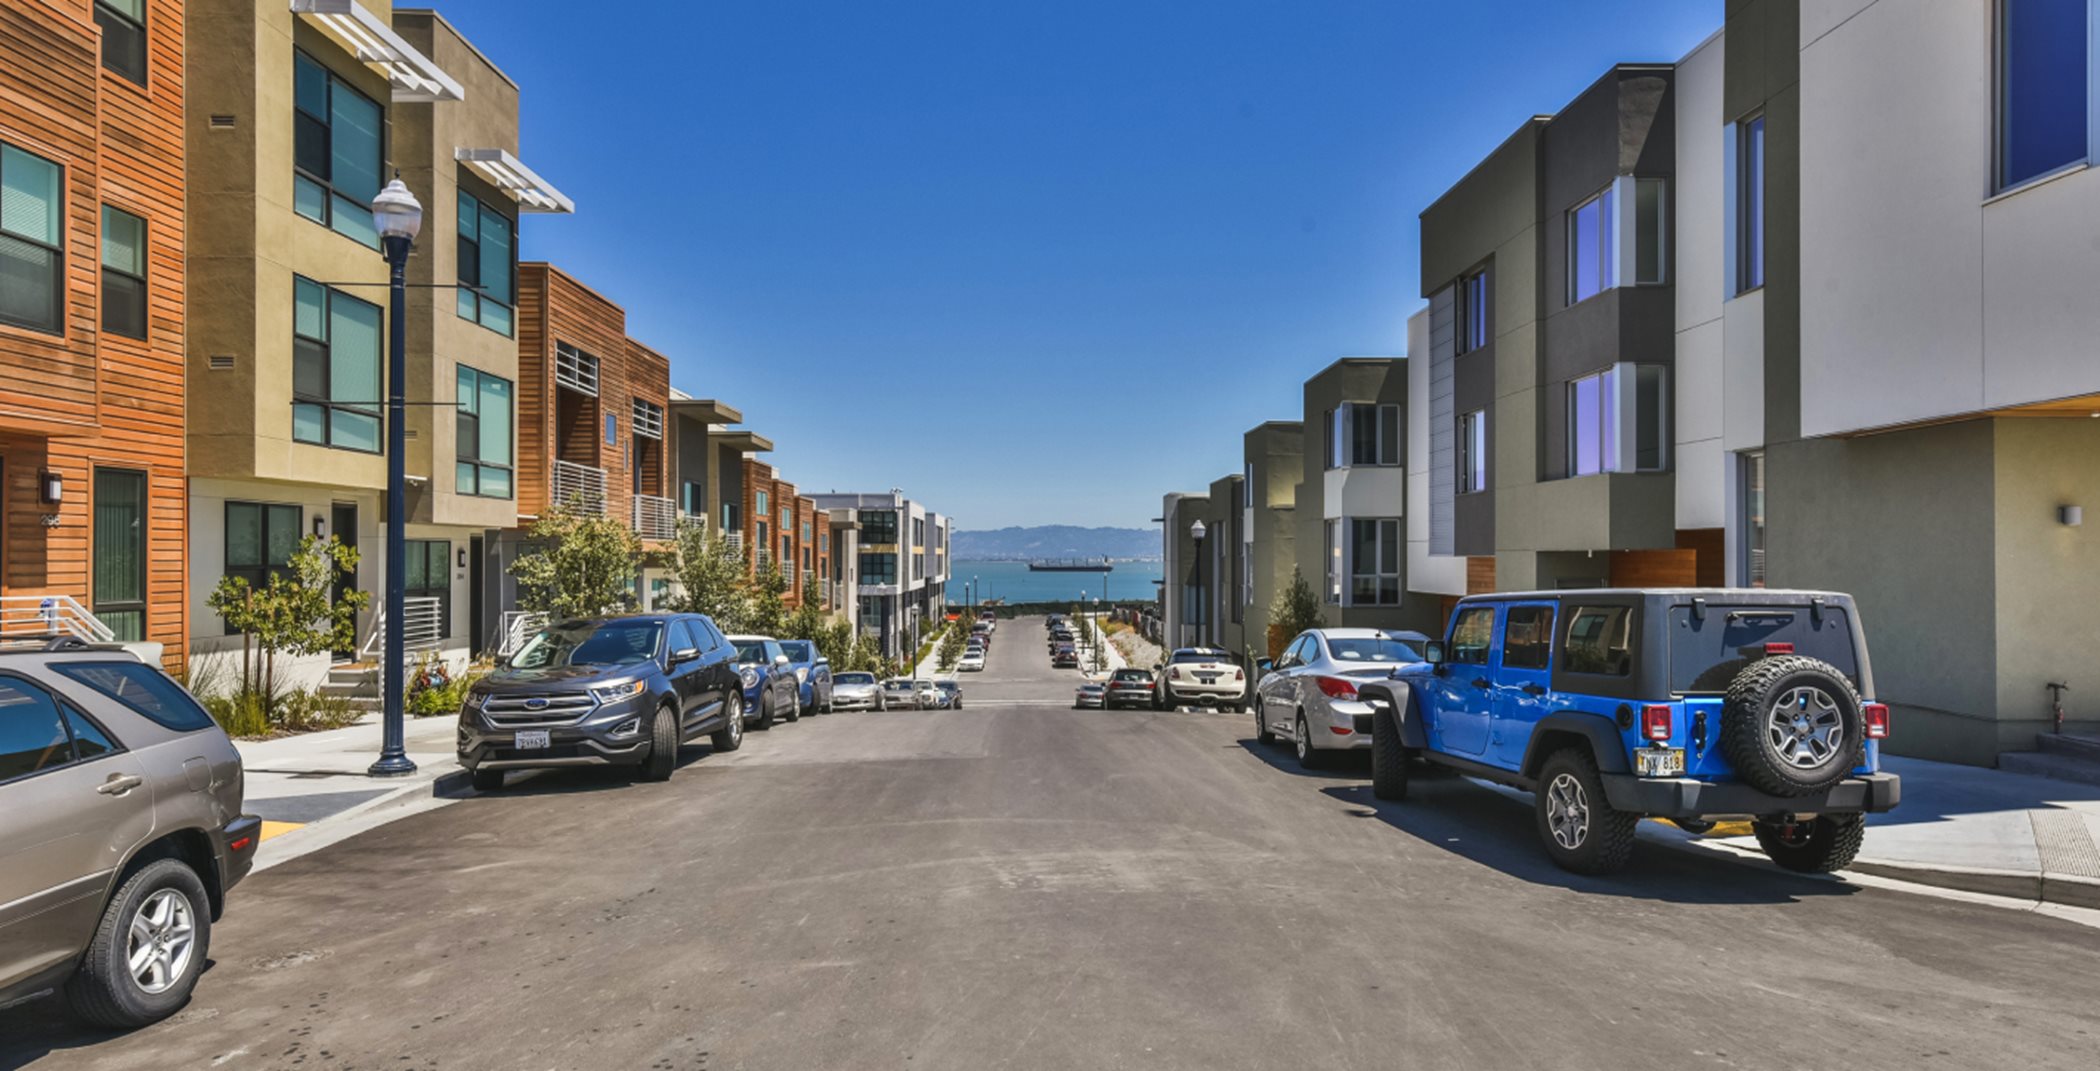 San Francisco Bay street view